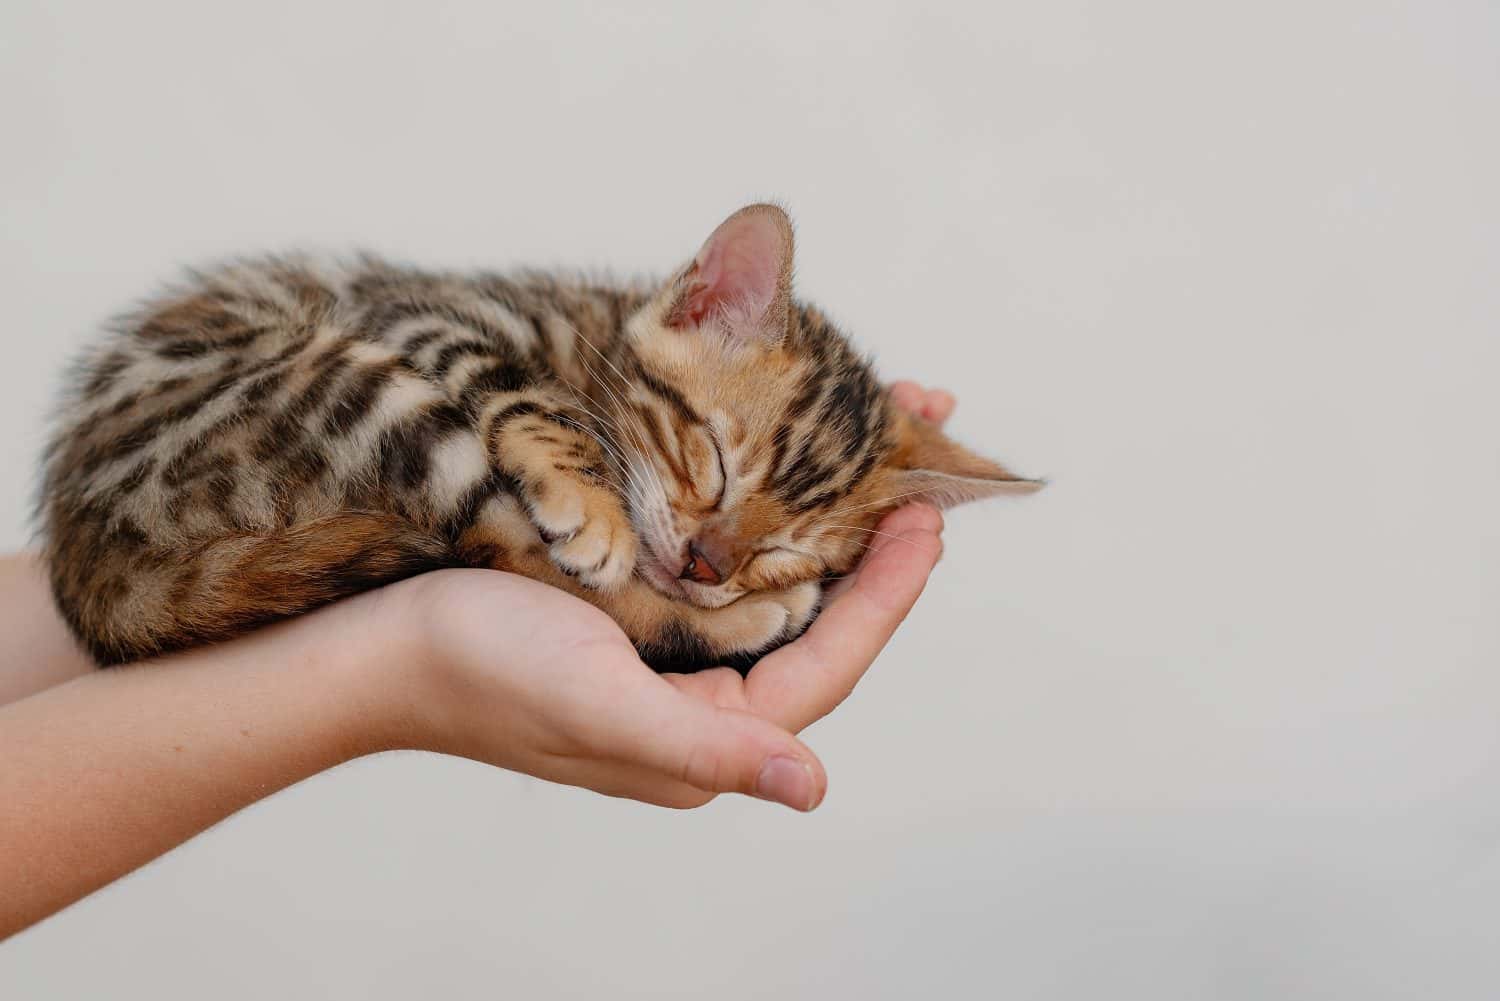 Un simpatico gattino bengala dorme rannicchiato sul palmo delle mani di un bambino, da vicino.  Copia spazio 